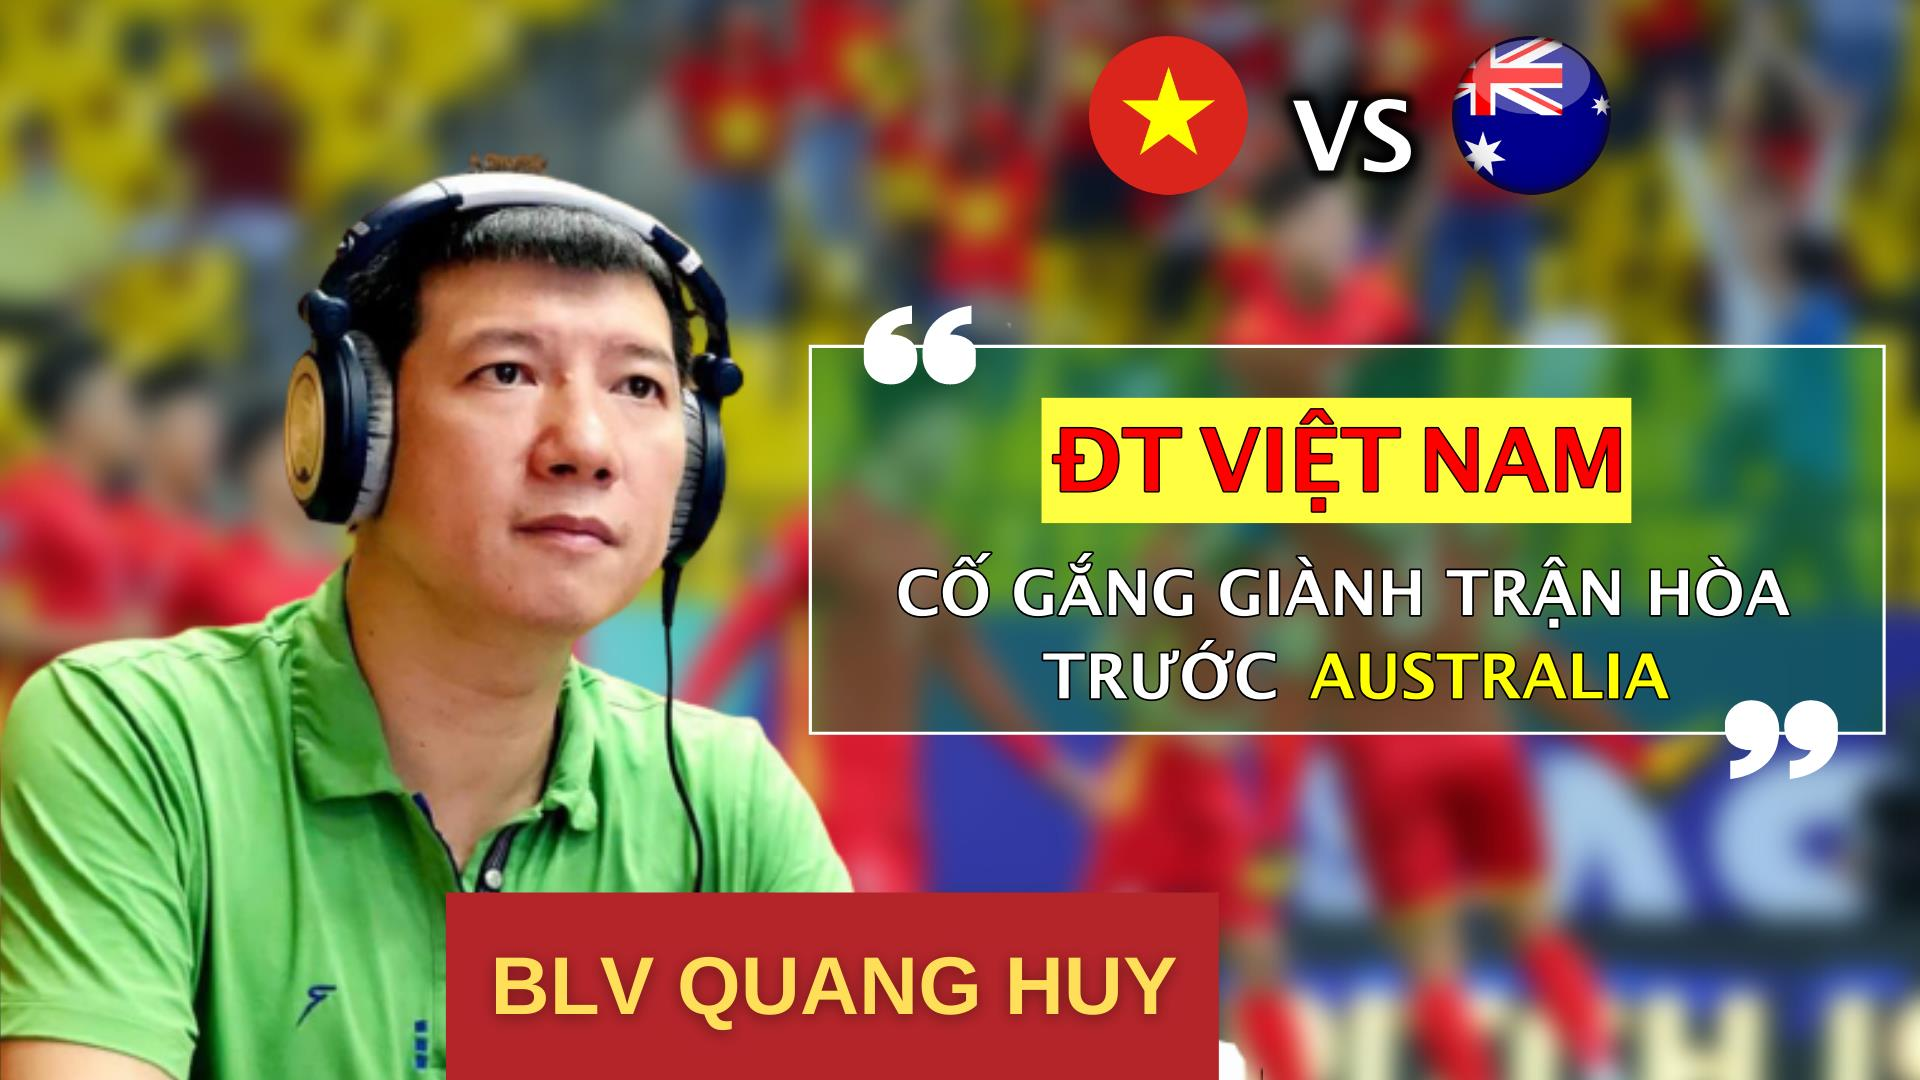 BLV Quang Huy: 'Đá kín kẽ, tuyển Việt Nam có thể hòa Australia' - 1